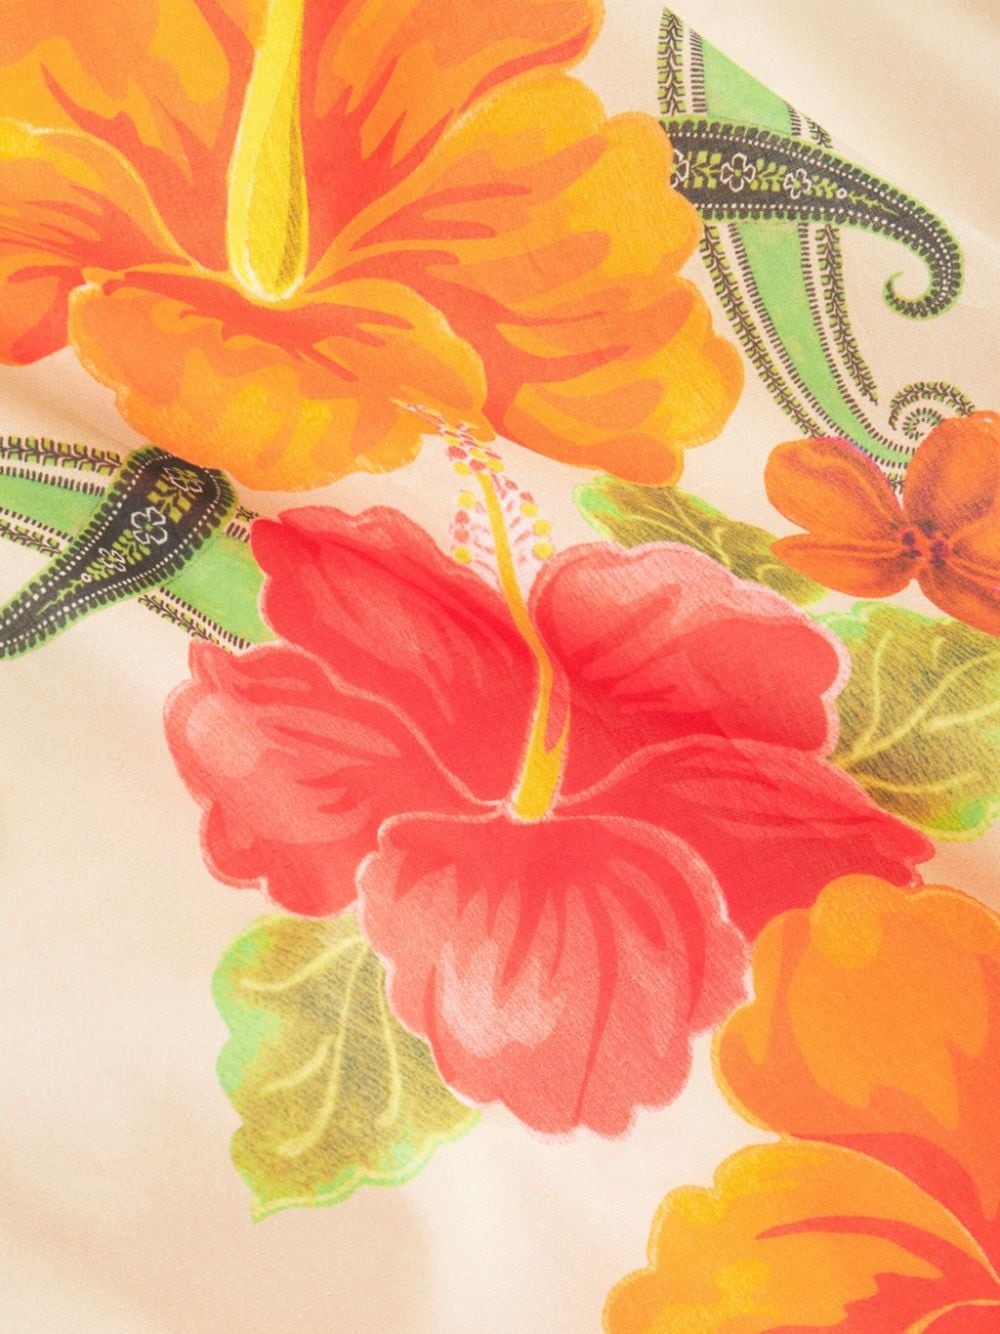 floral-print cotton shirt - 5